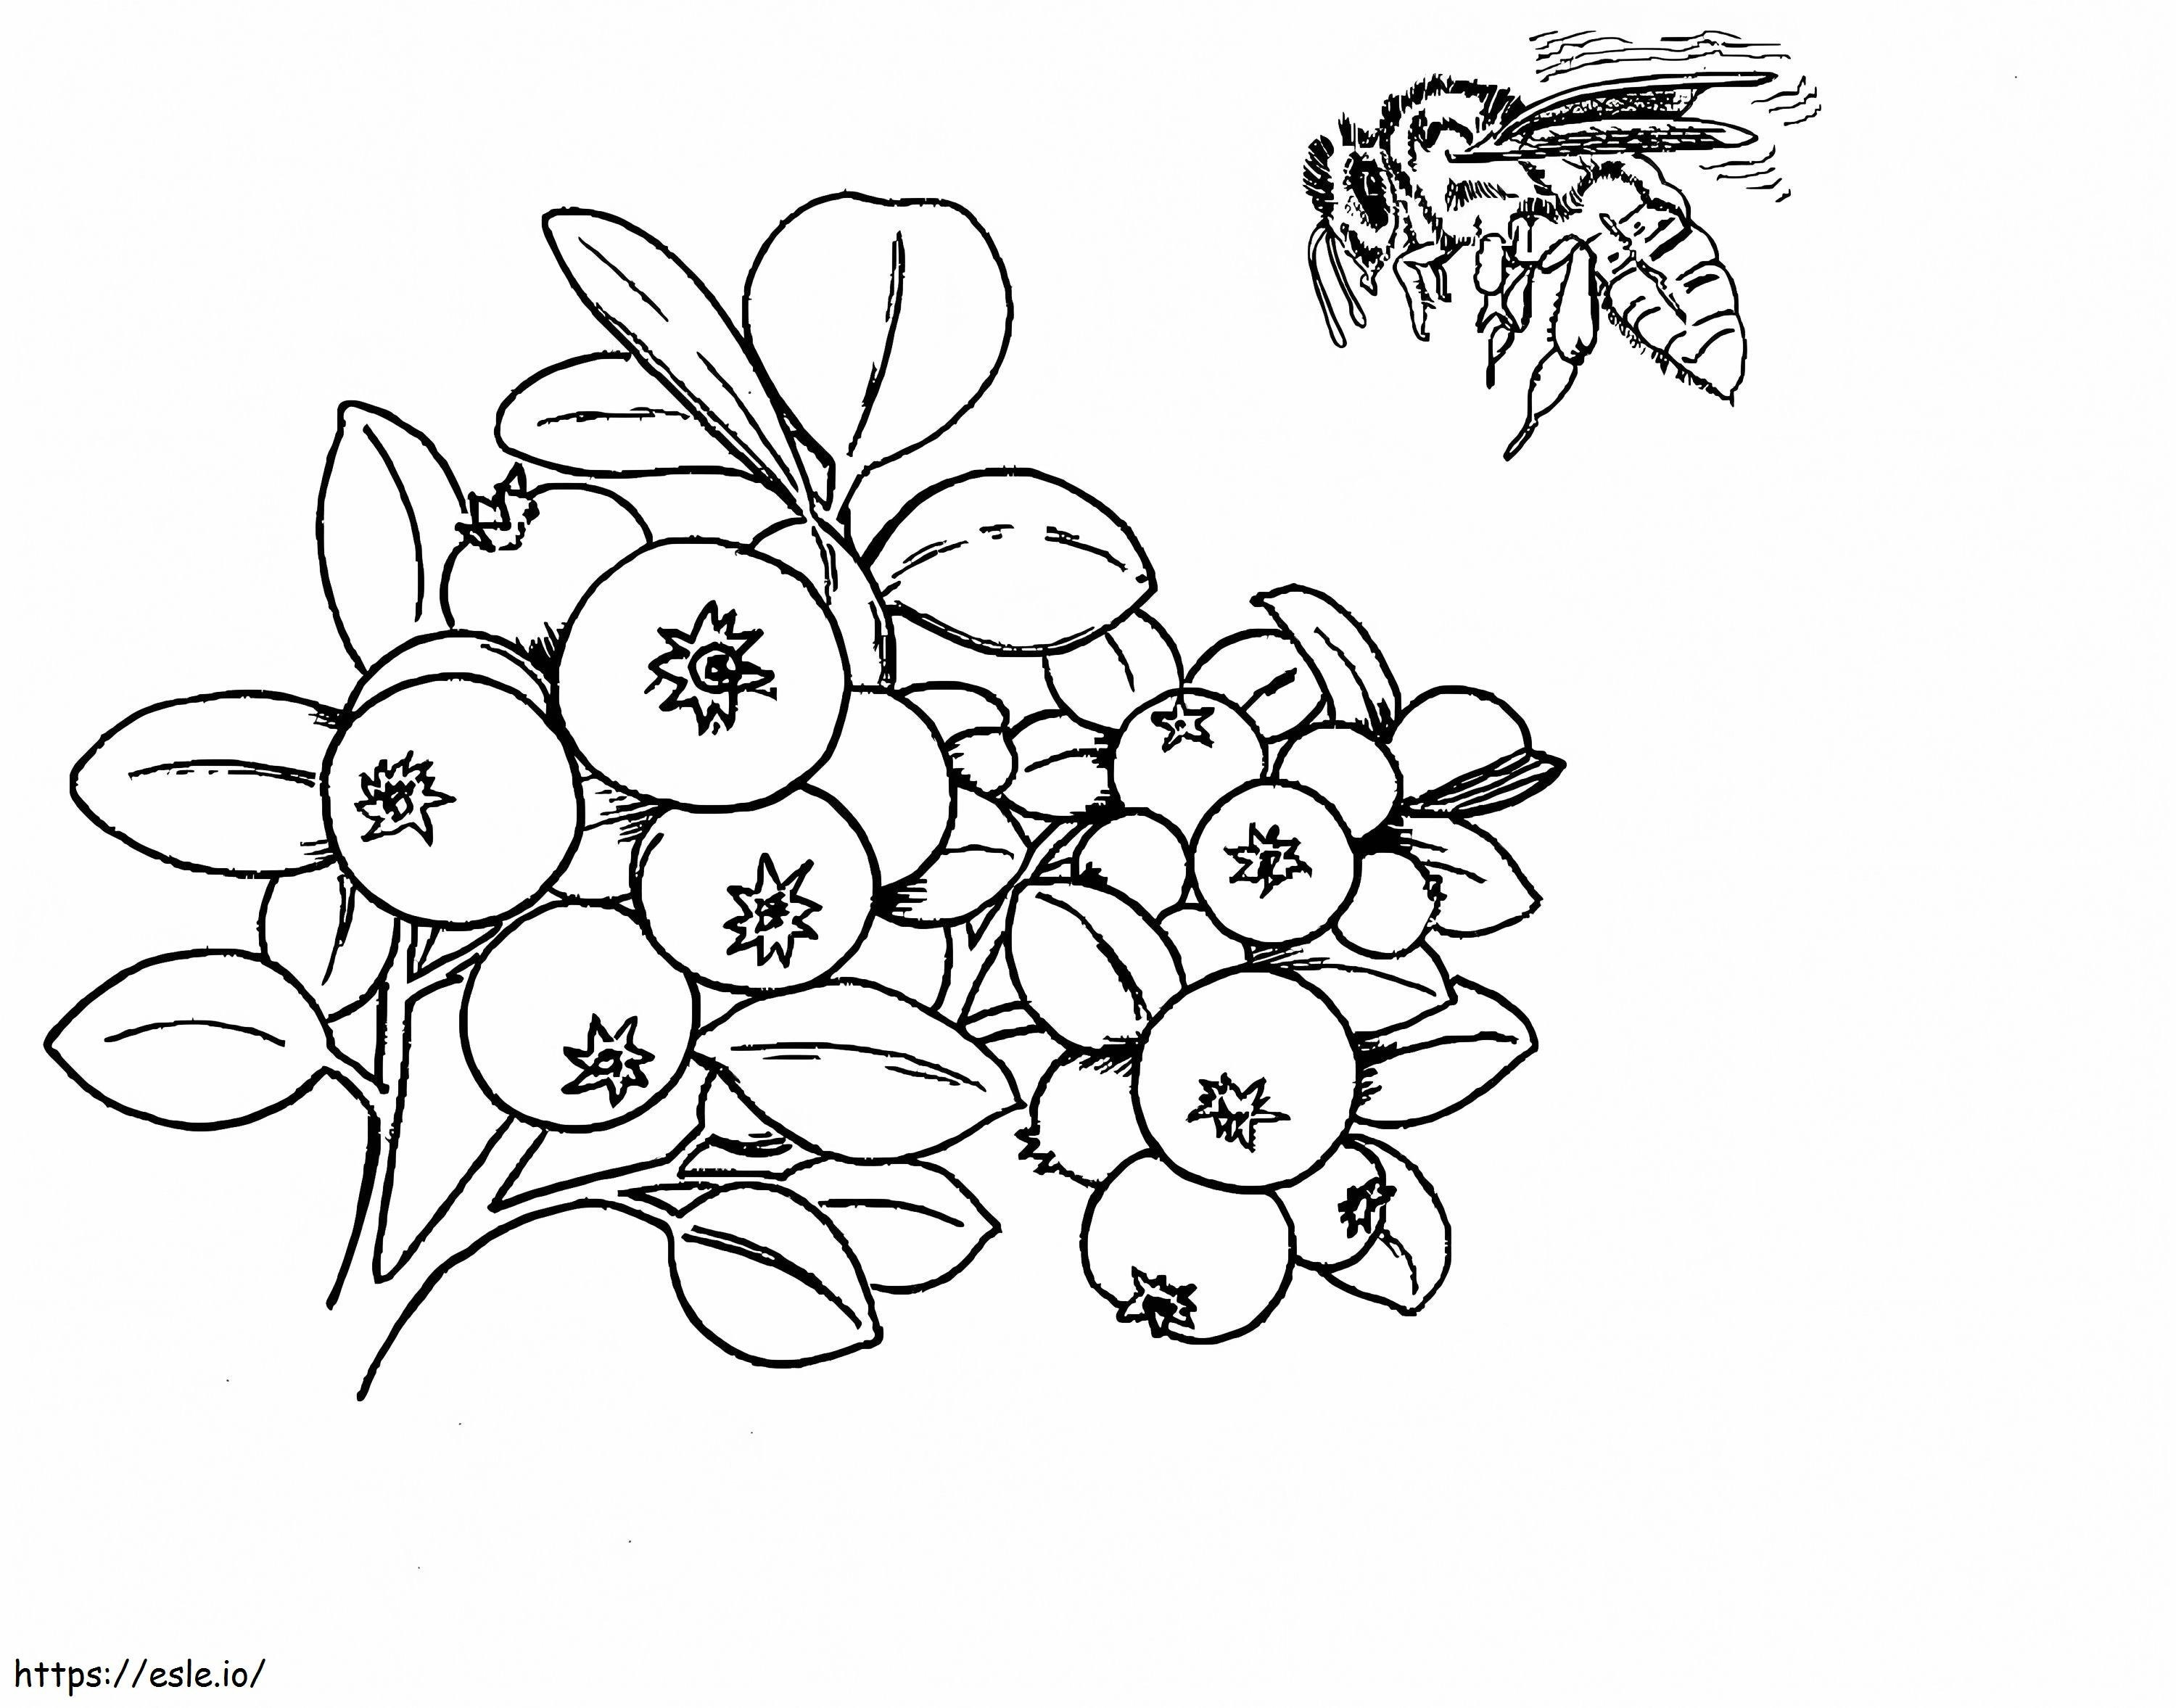 Brombeere und Biene ausmalbilder